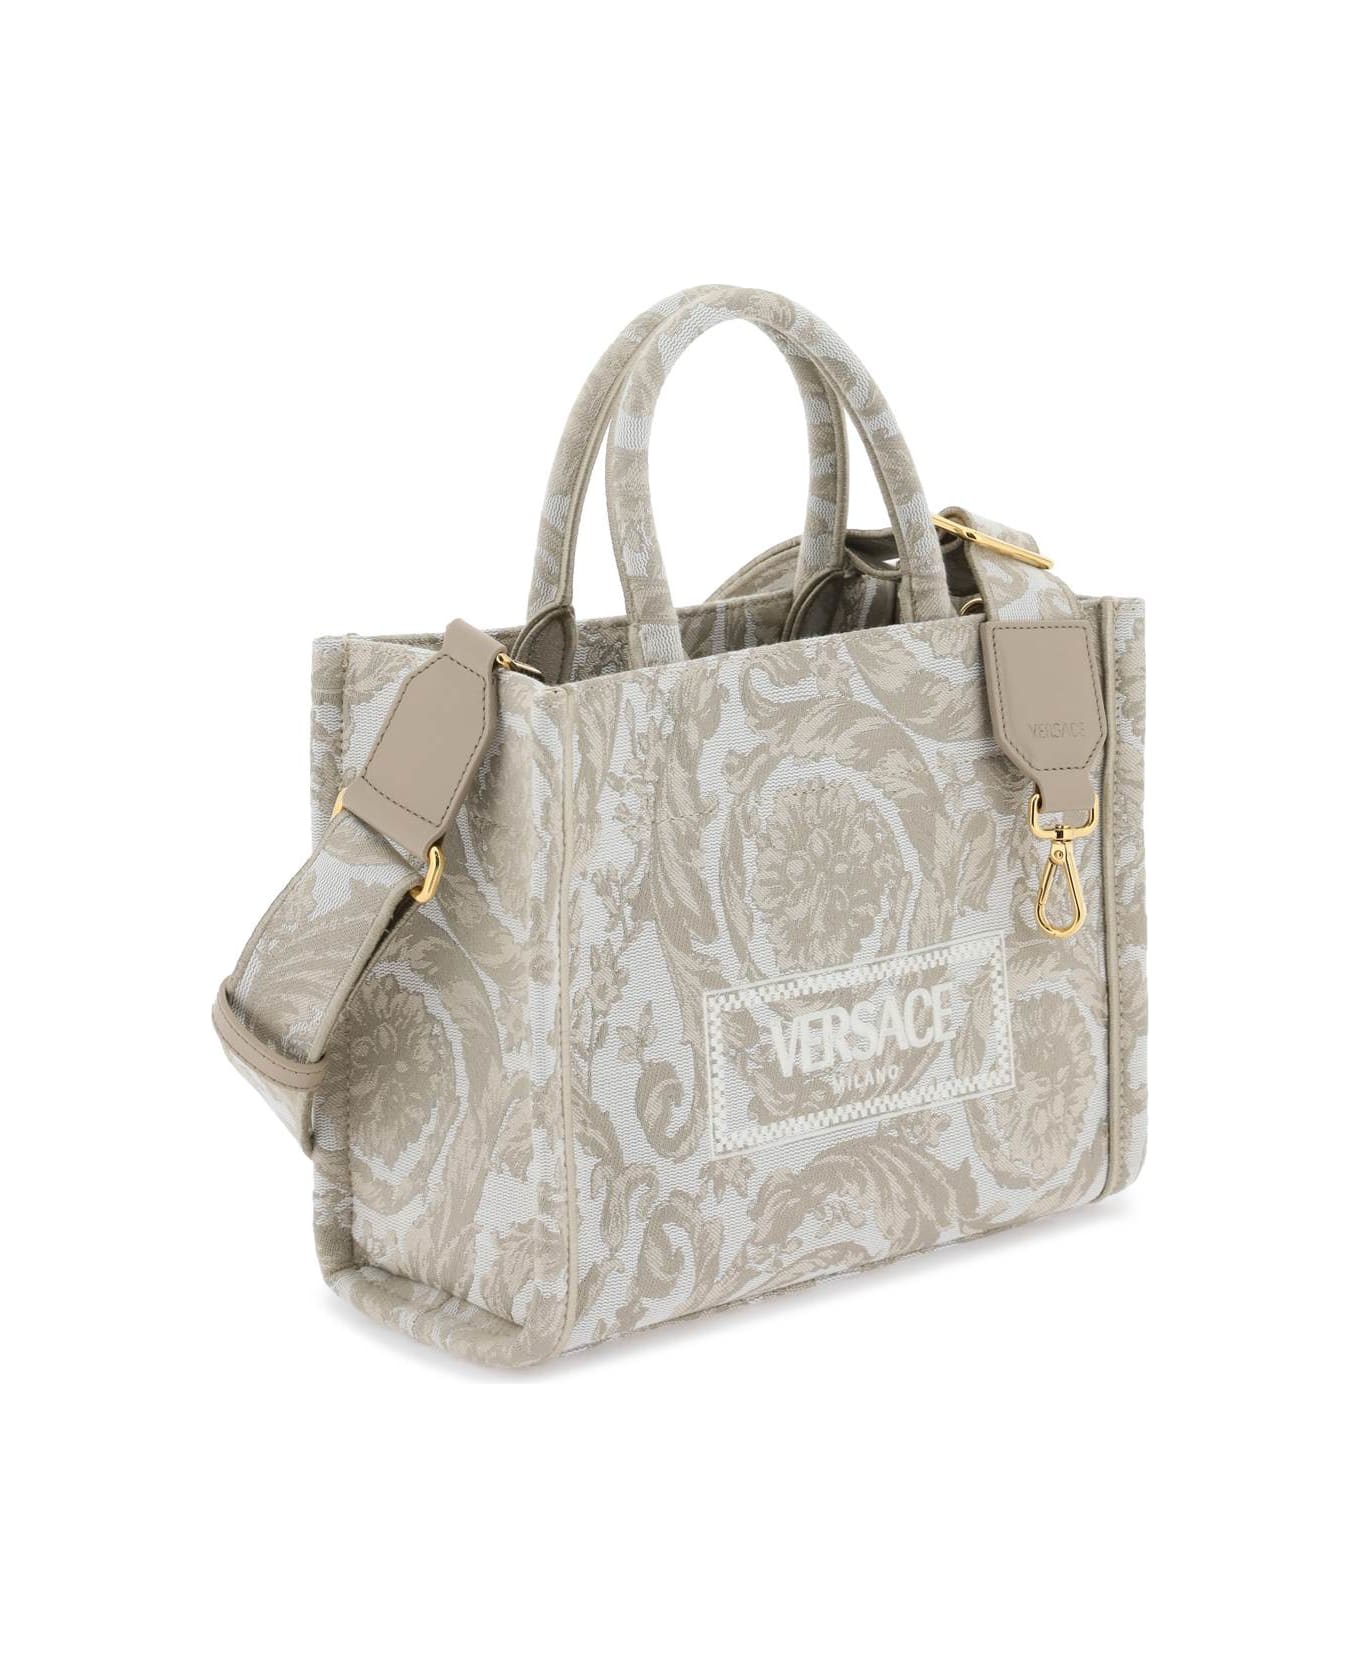 Versace Two-tone Fabric Bag - BEIGE BEIGE VERSACE GOLD トートバッグ